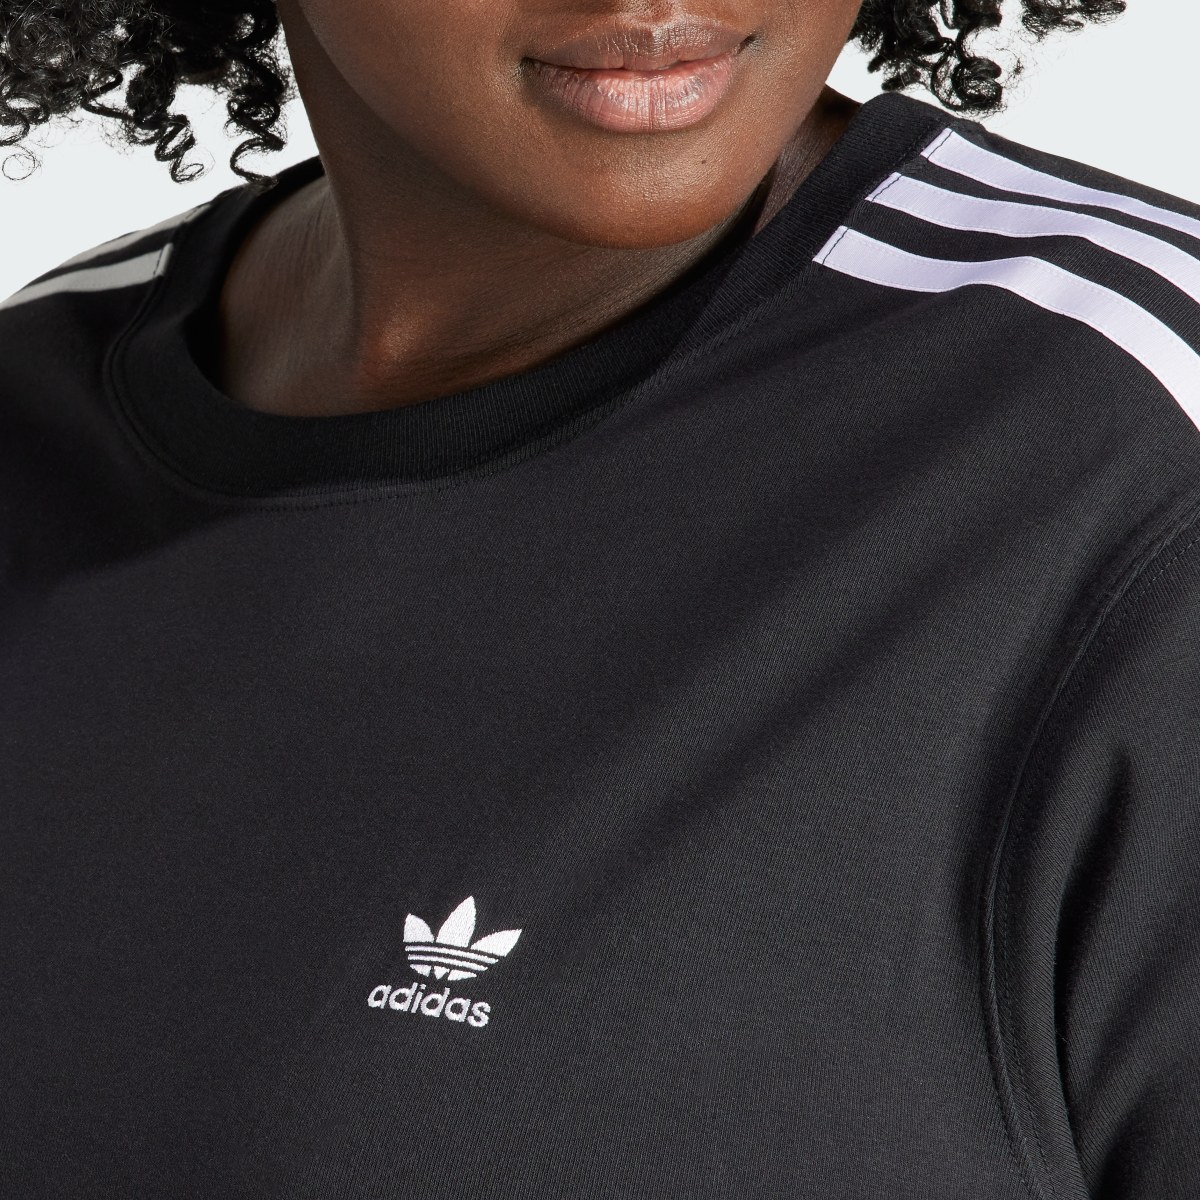 Adidas 3-Streifen Baby T-Shirt – Große Größen. 6